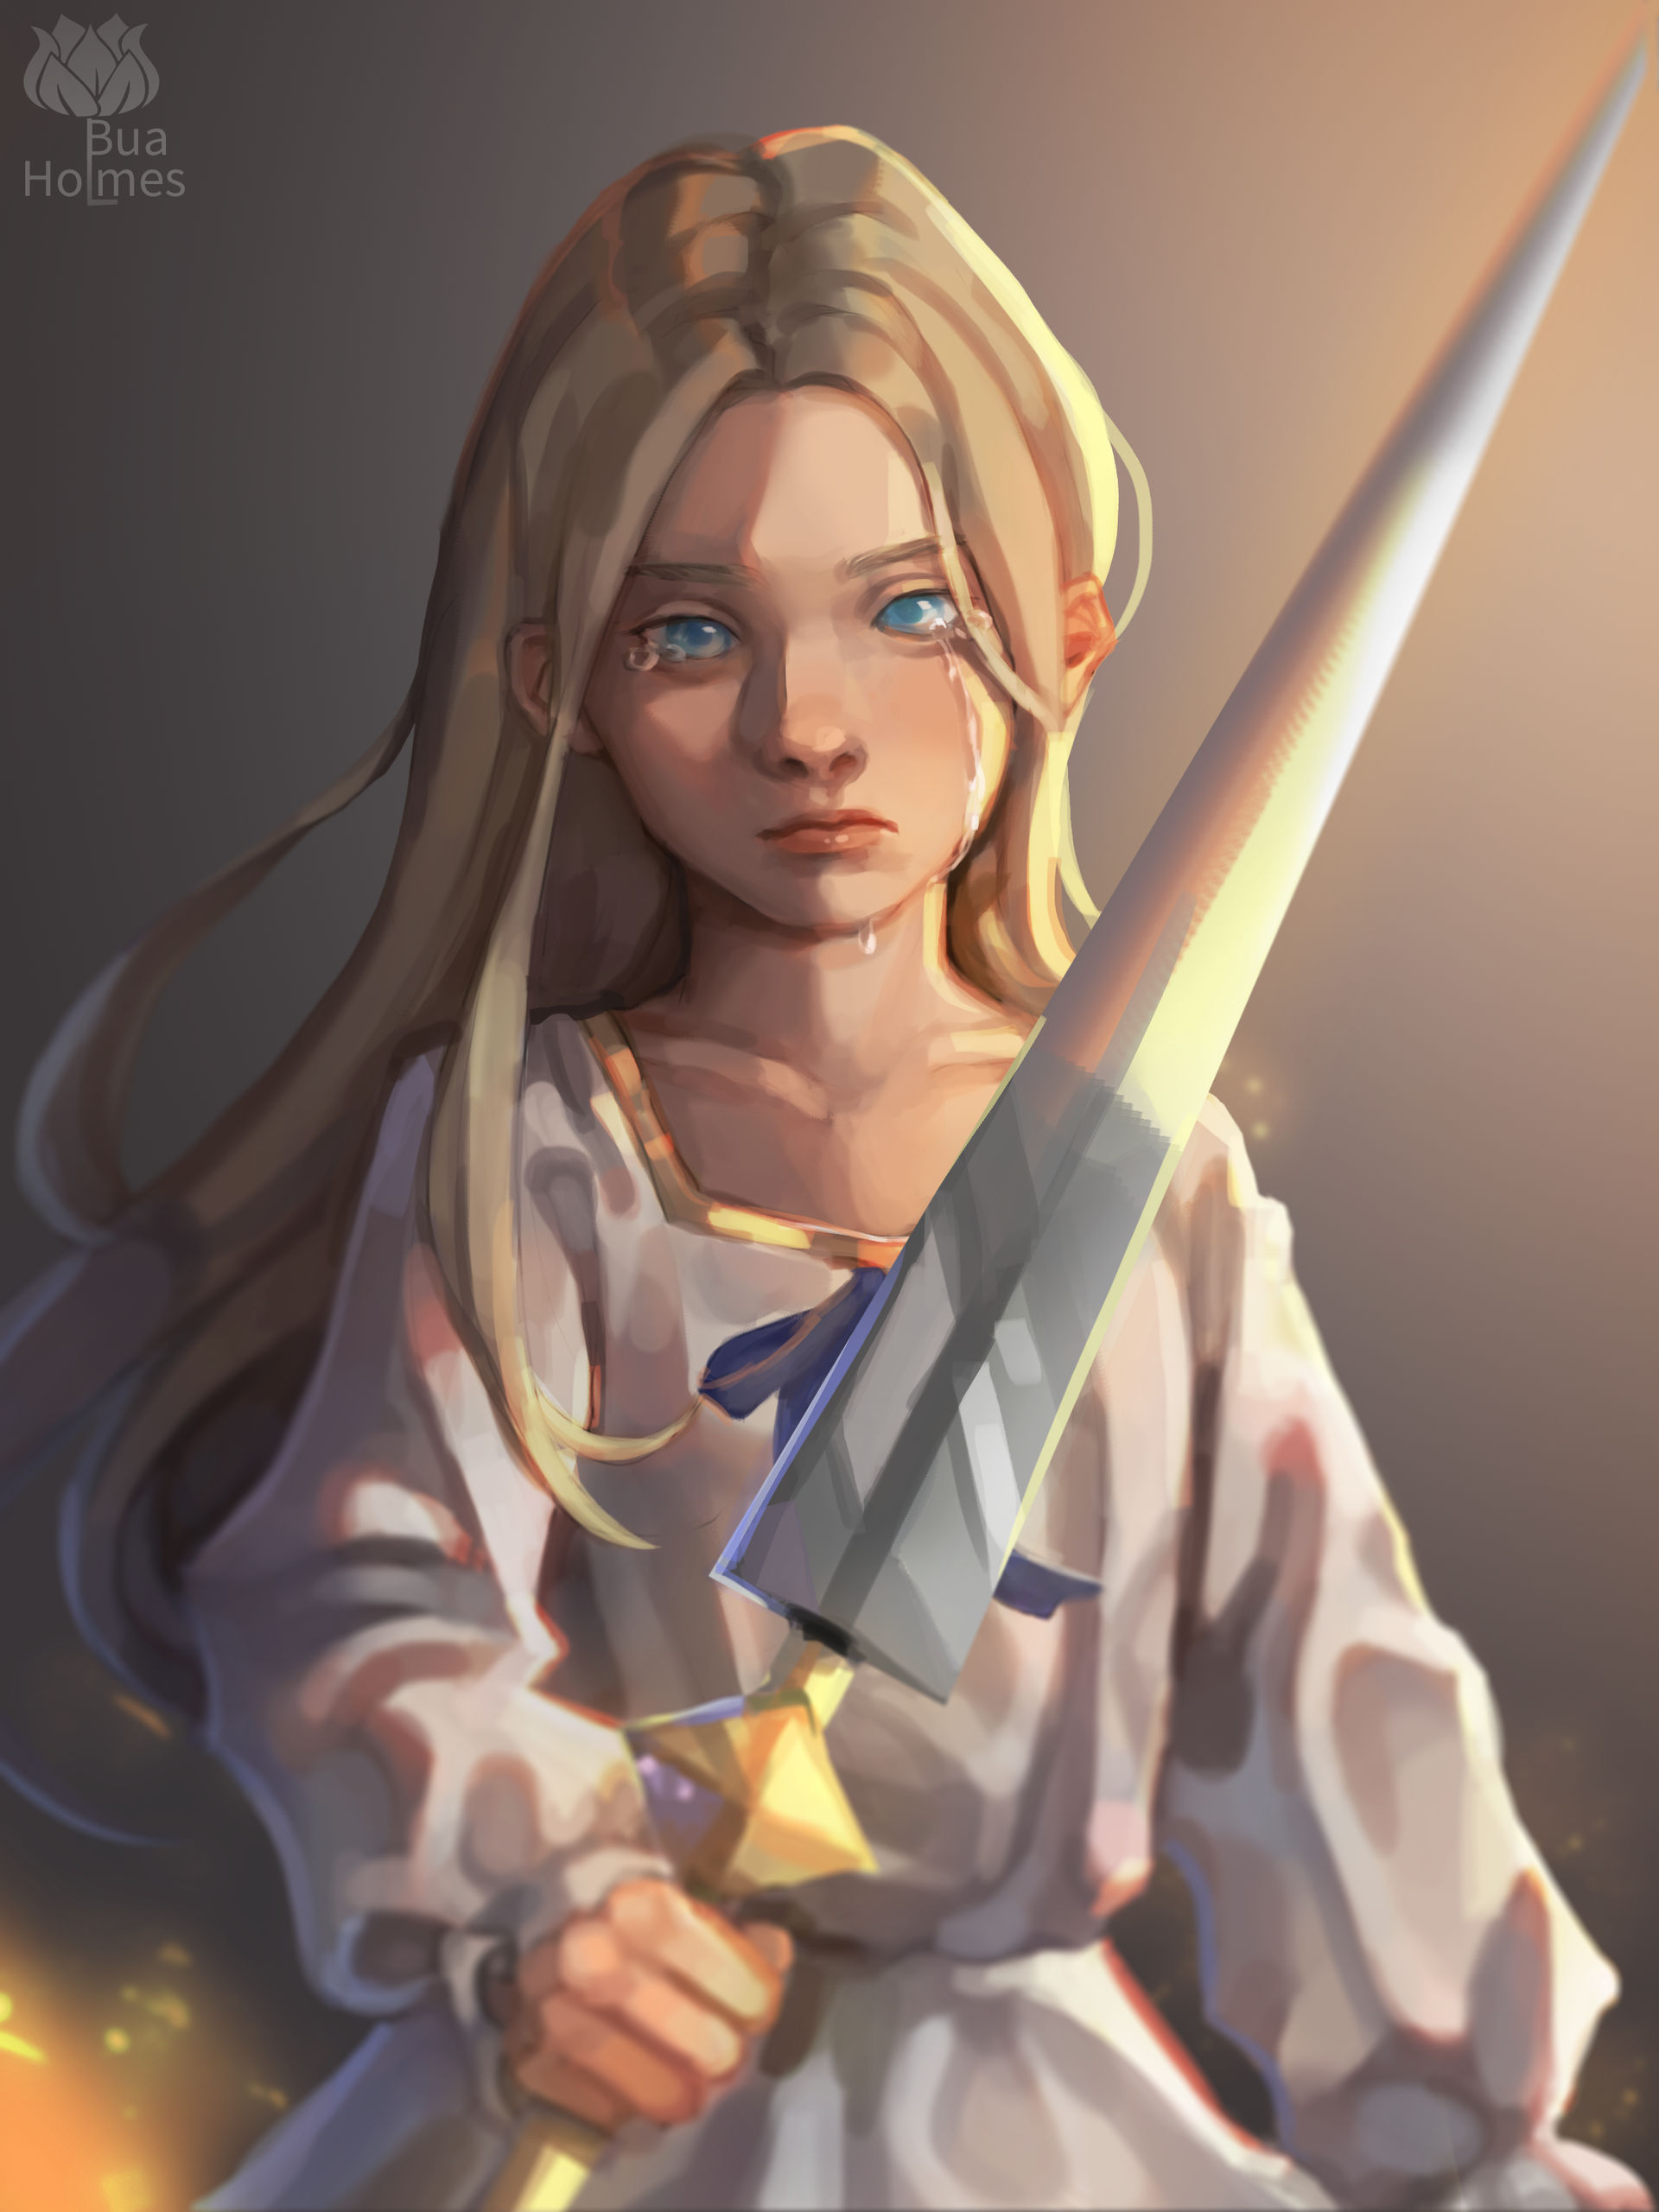 Shieldmaiden of Rohan by Ryuutsu on DeviantArt